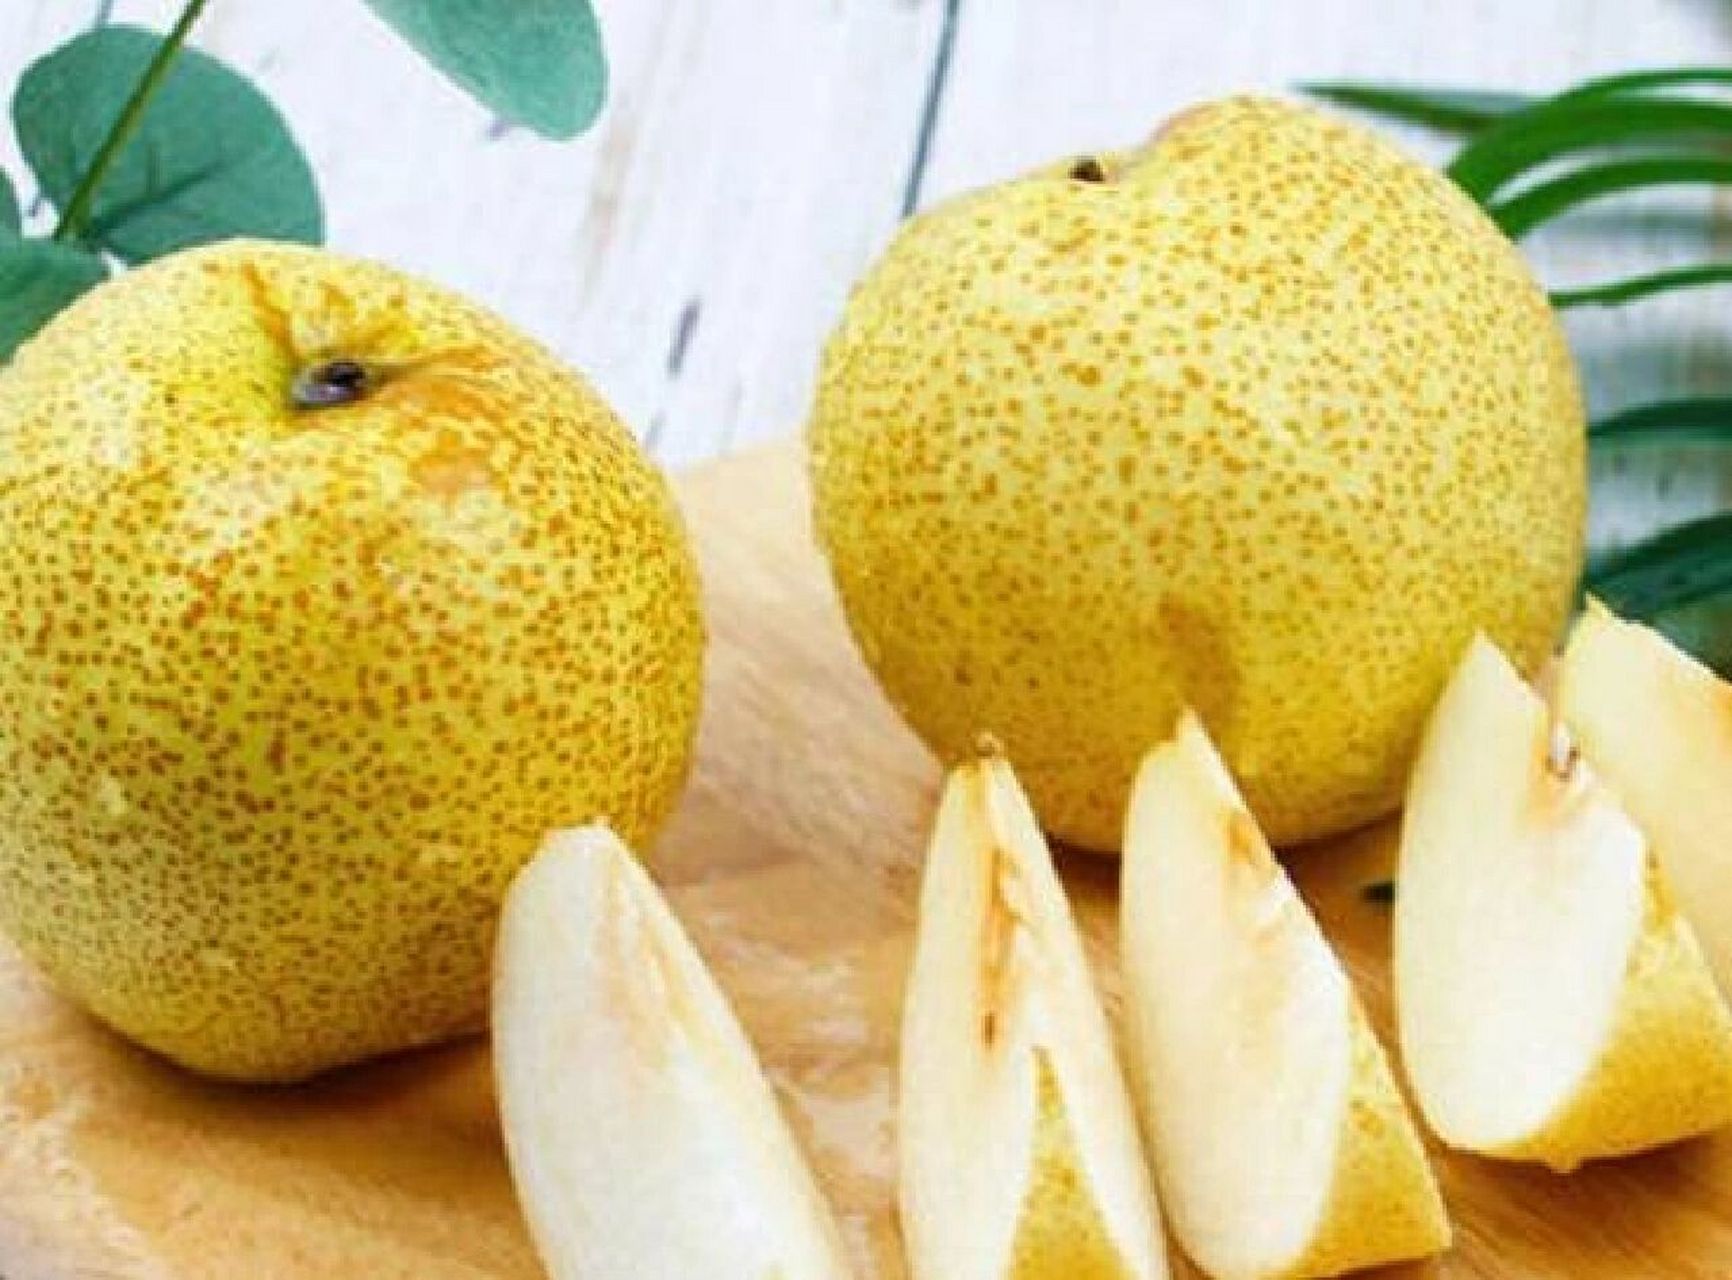 止咳化痰润肺的7种水果 止咳化痰润肺的水果有很多,如梨,柿子,苹果